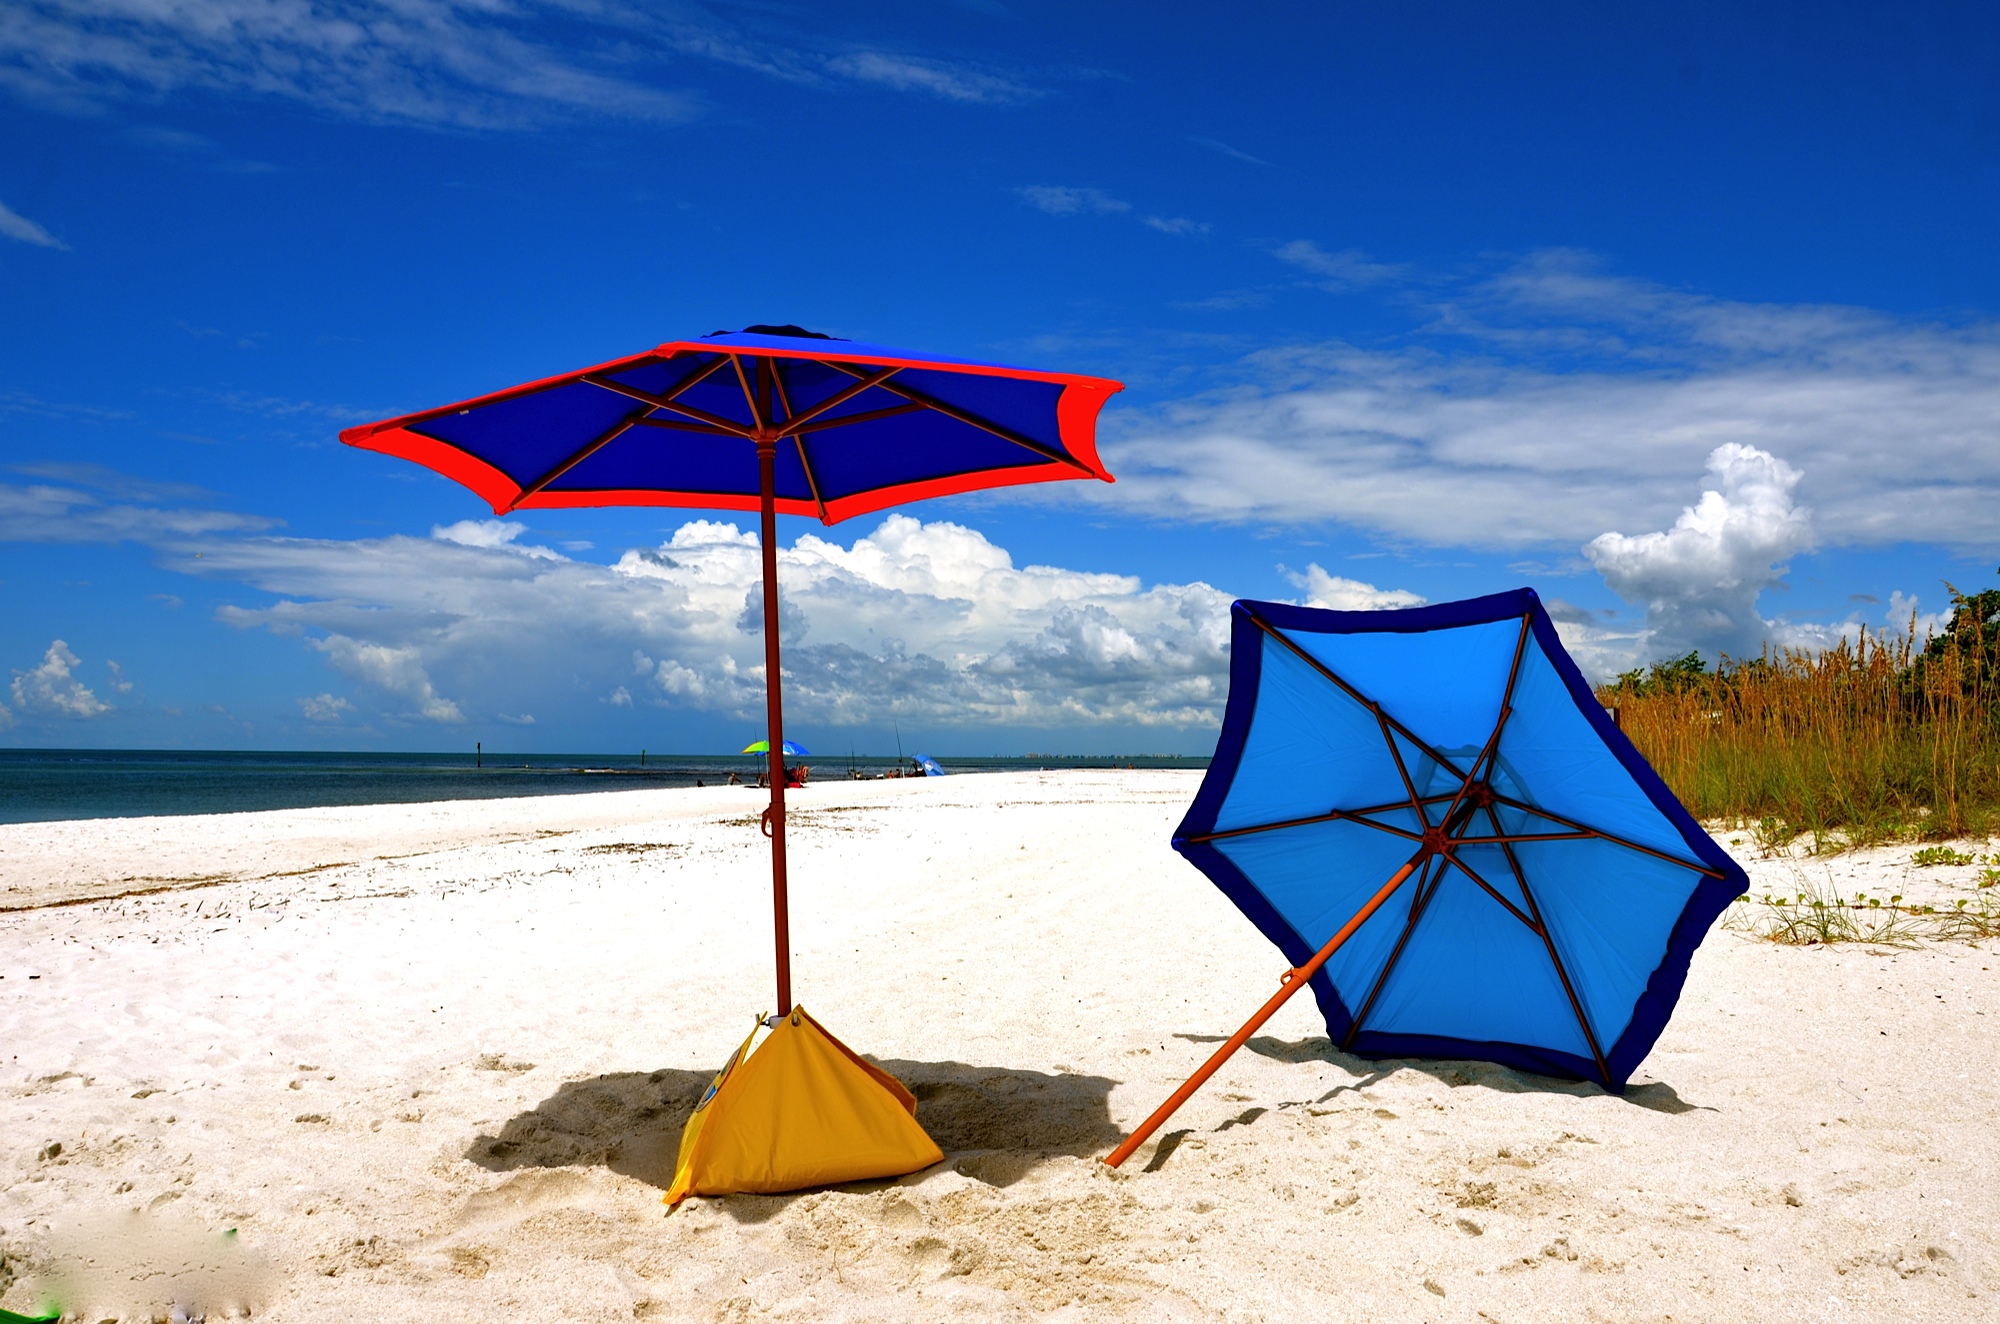 Hodnotenie najlepších výrobcov plážových slnečníkov pre rok 2020